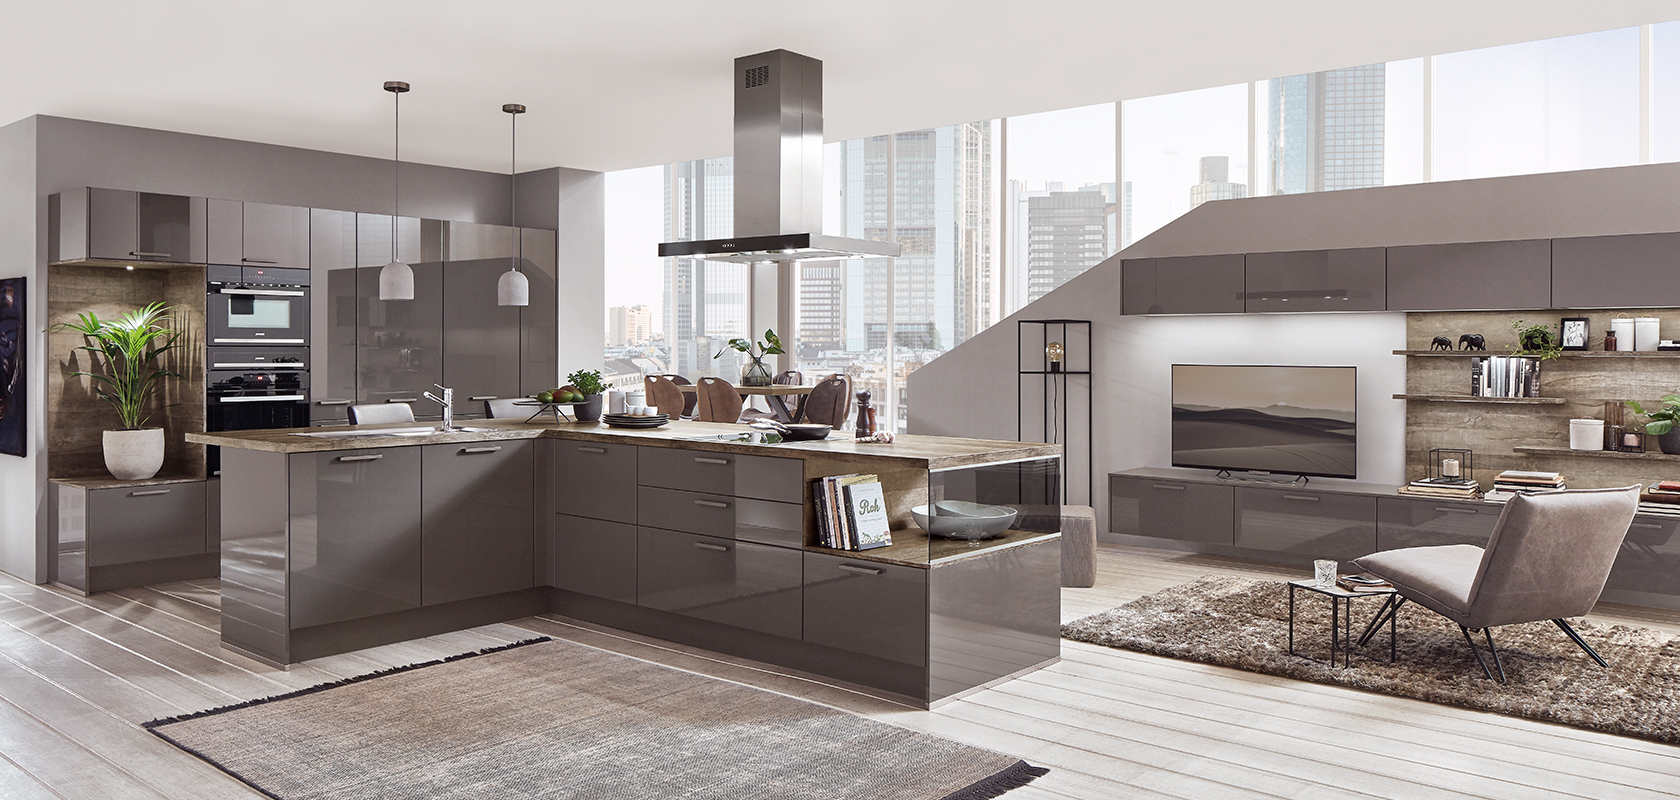 Moderna cocina elegante con electrodomésticos integrados y una sala de estar a juego, con vistas al paisaje urbano a través de grandes ventanas, fusionando funcionalidad y estilo.